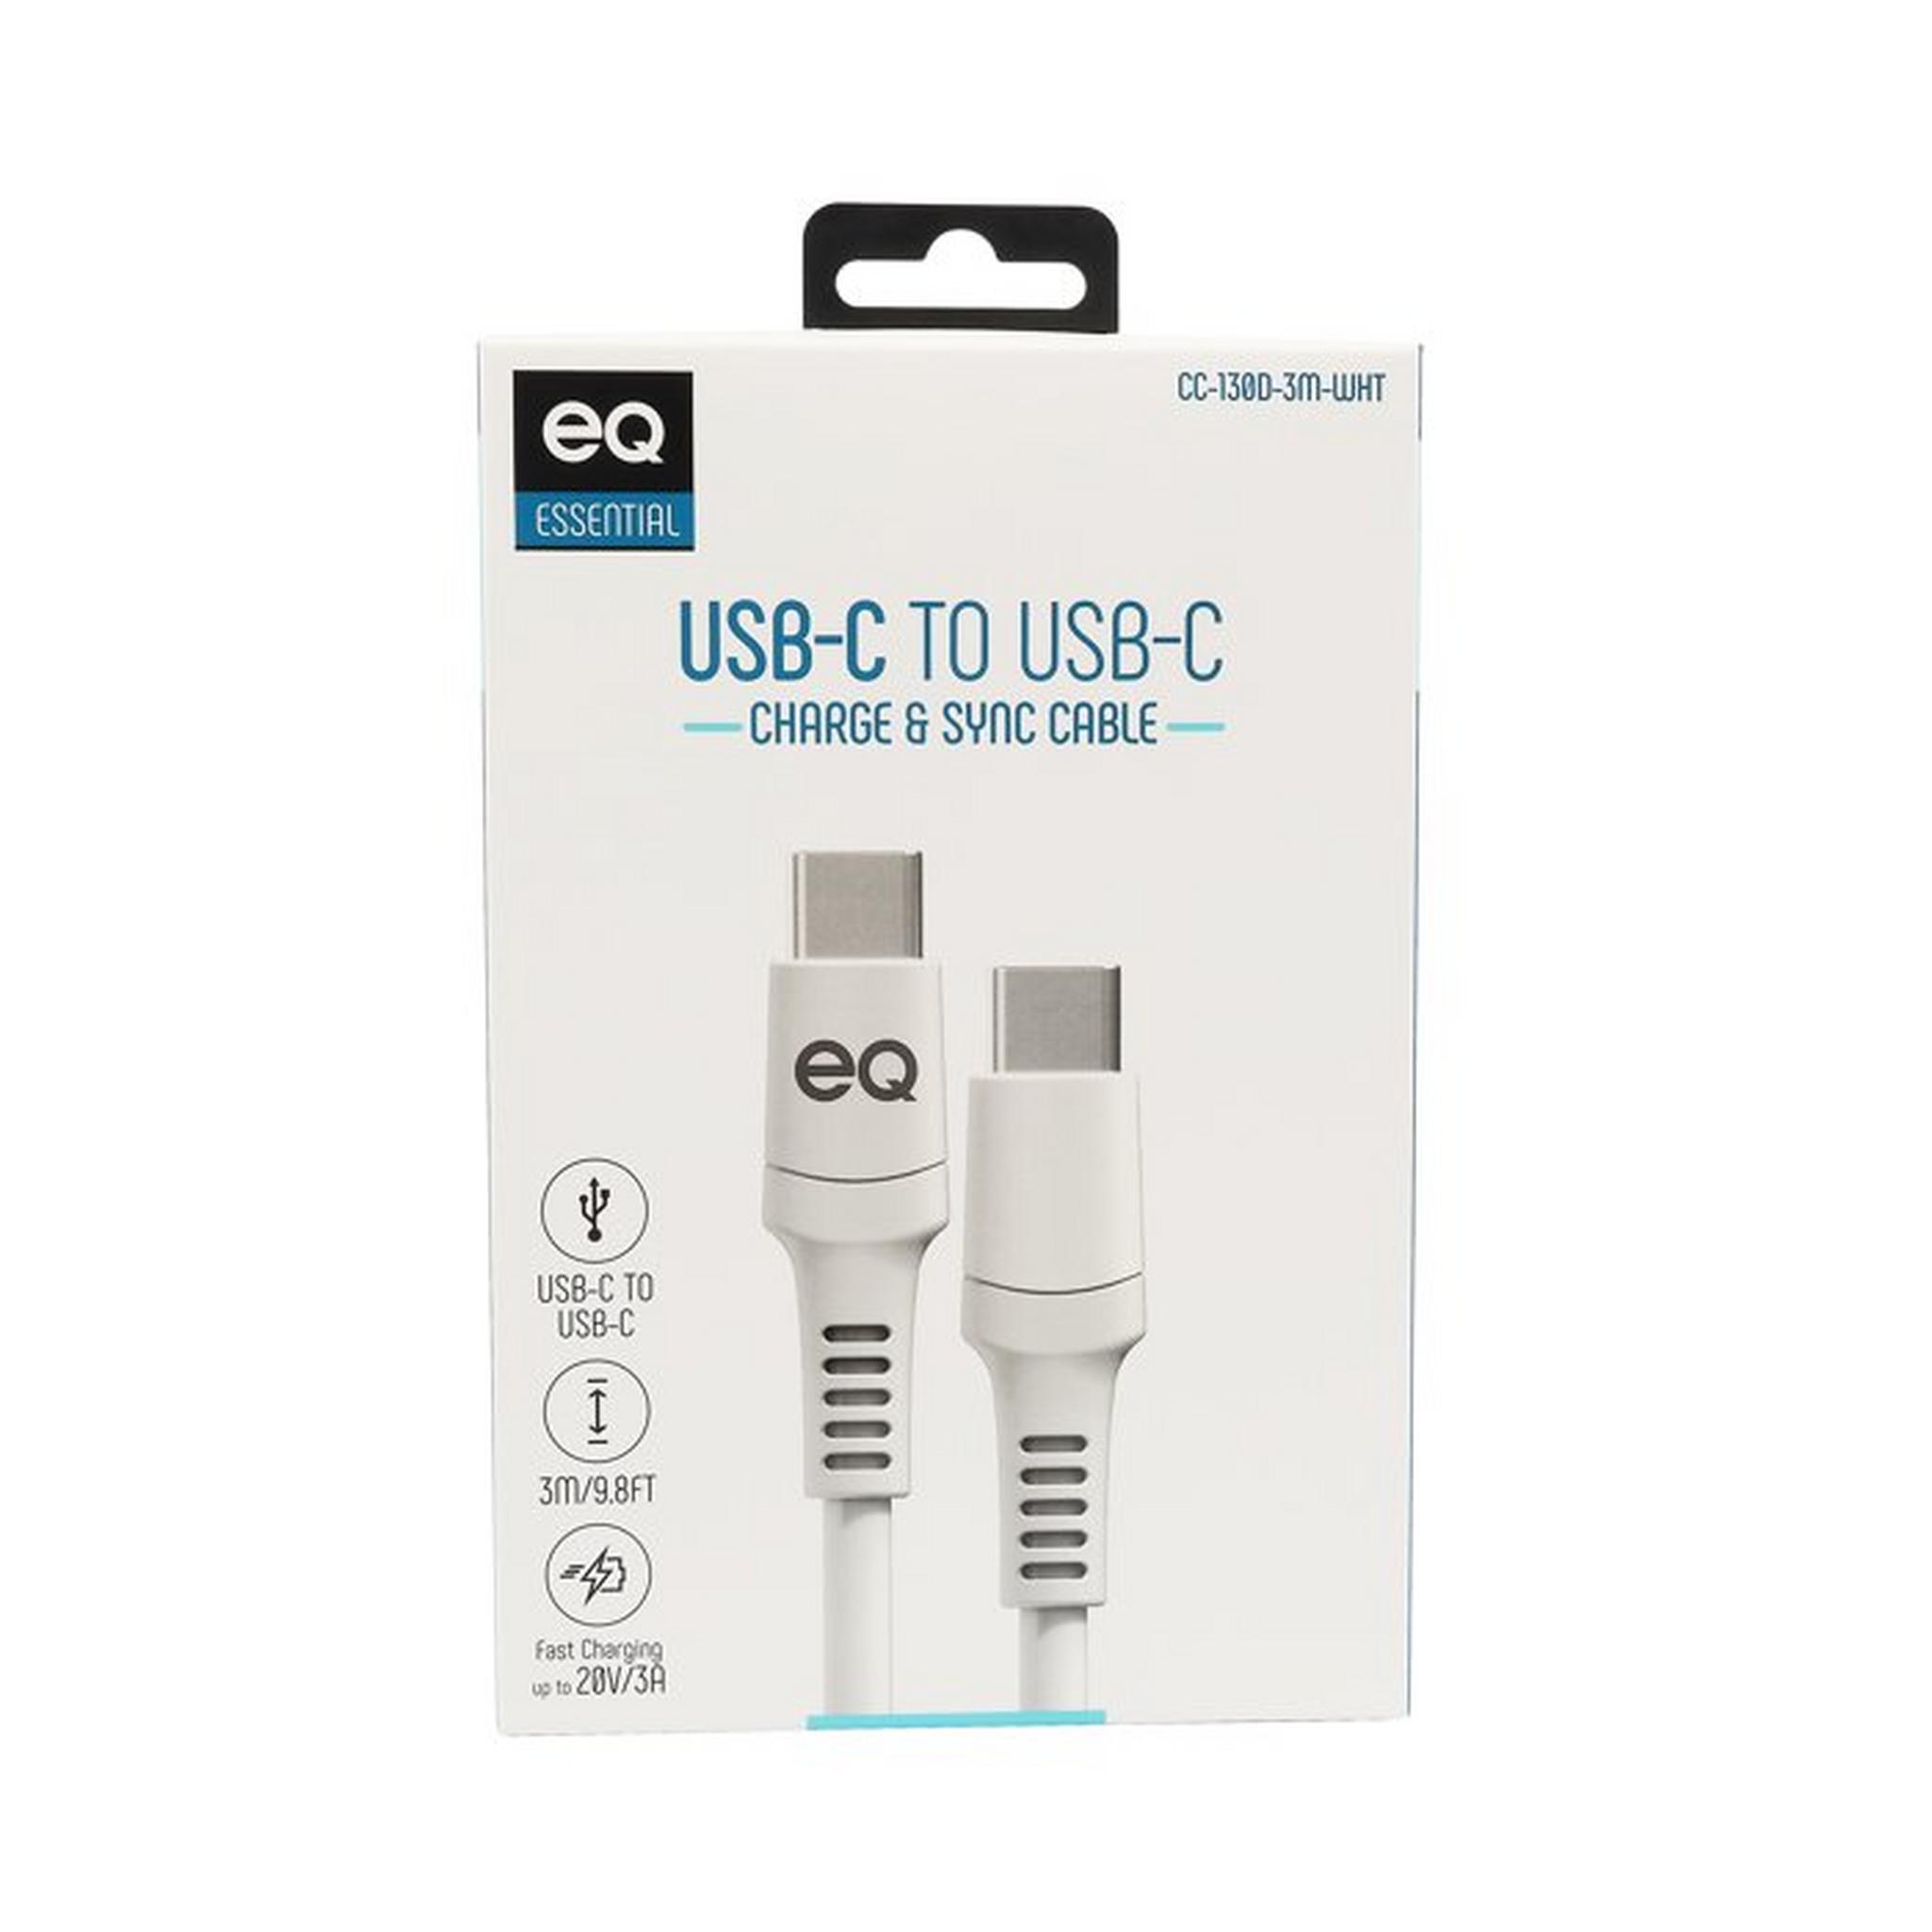 EQ USB-C To USB-C Charing Cable, 3m, CC-130D-3M-WHT – White